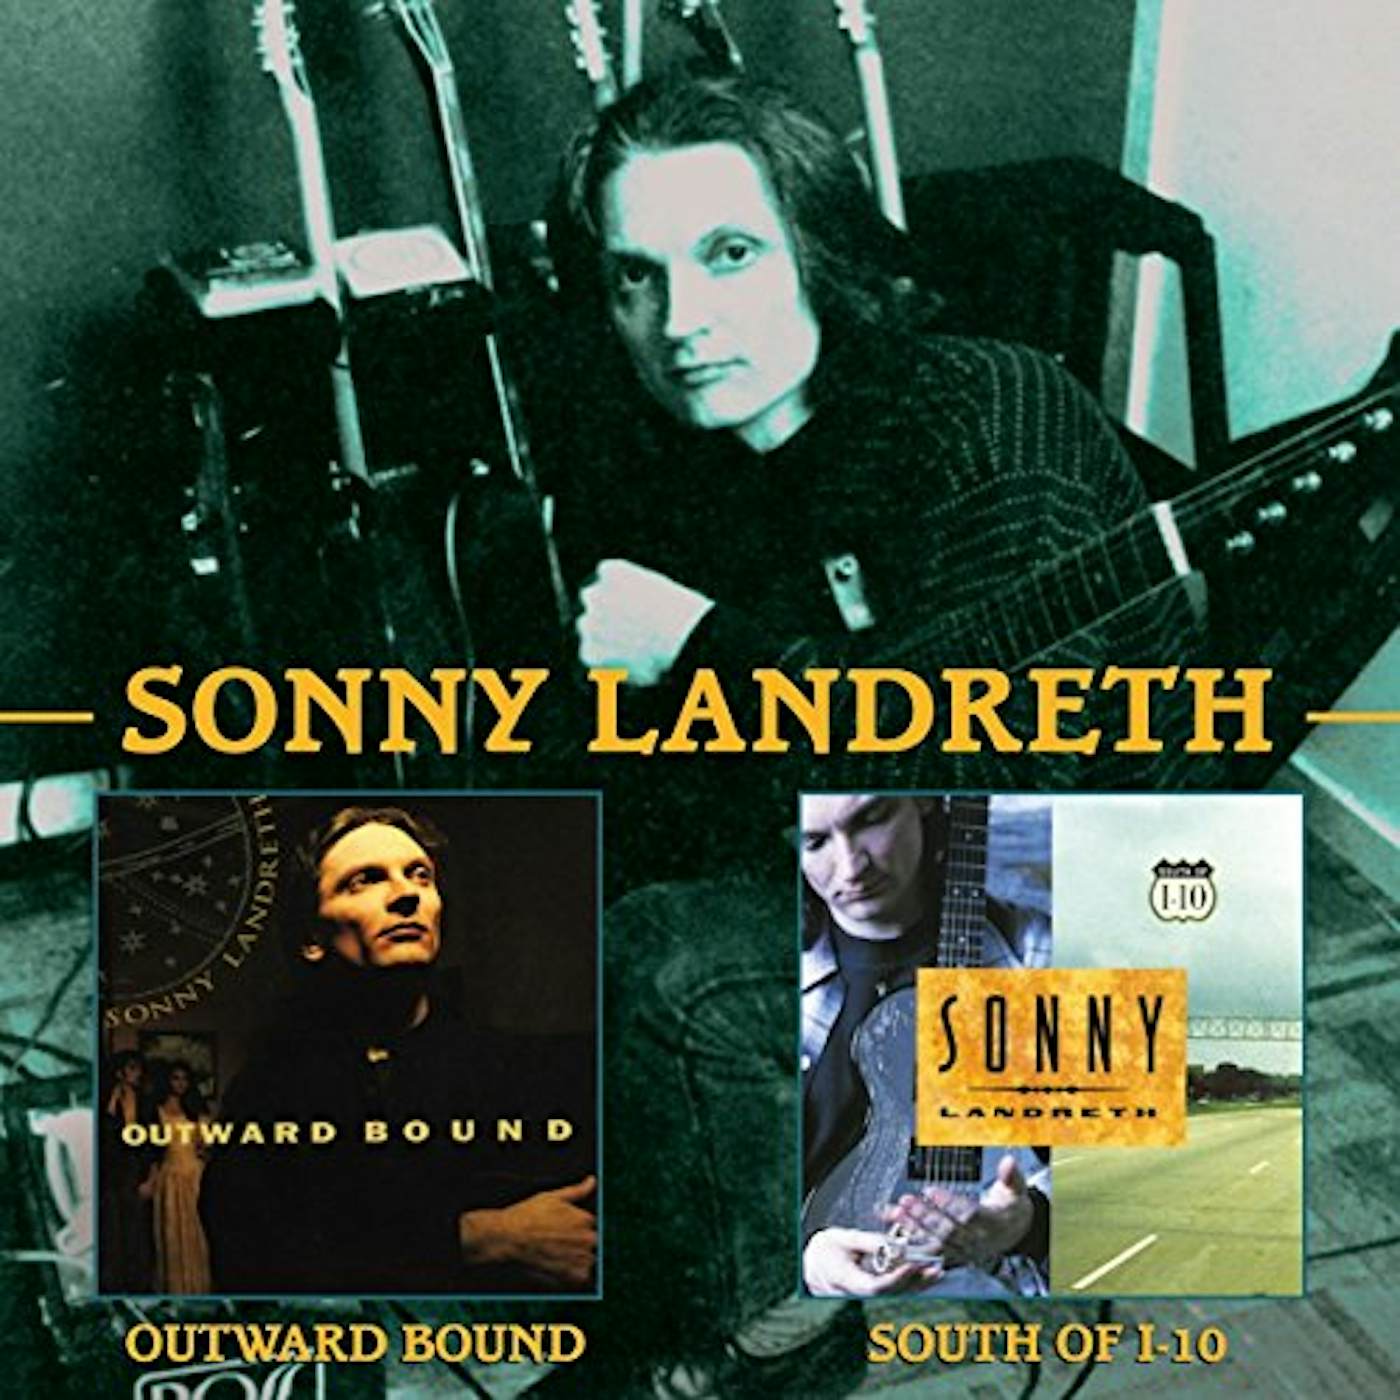 Sonny Landreth OUTWARD BOUND C/W SOUTH OF I-10 CD